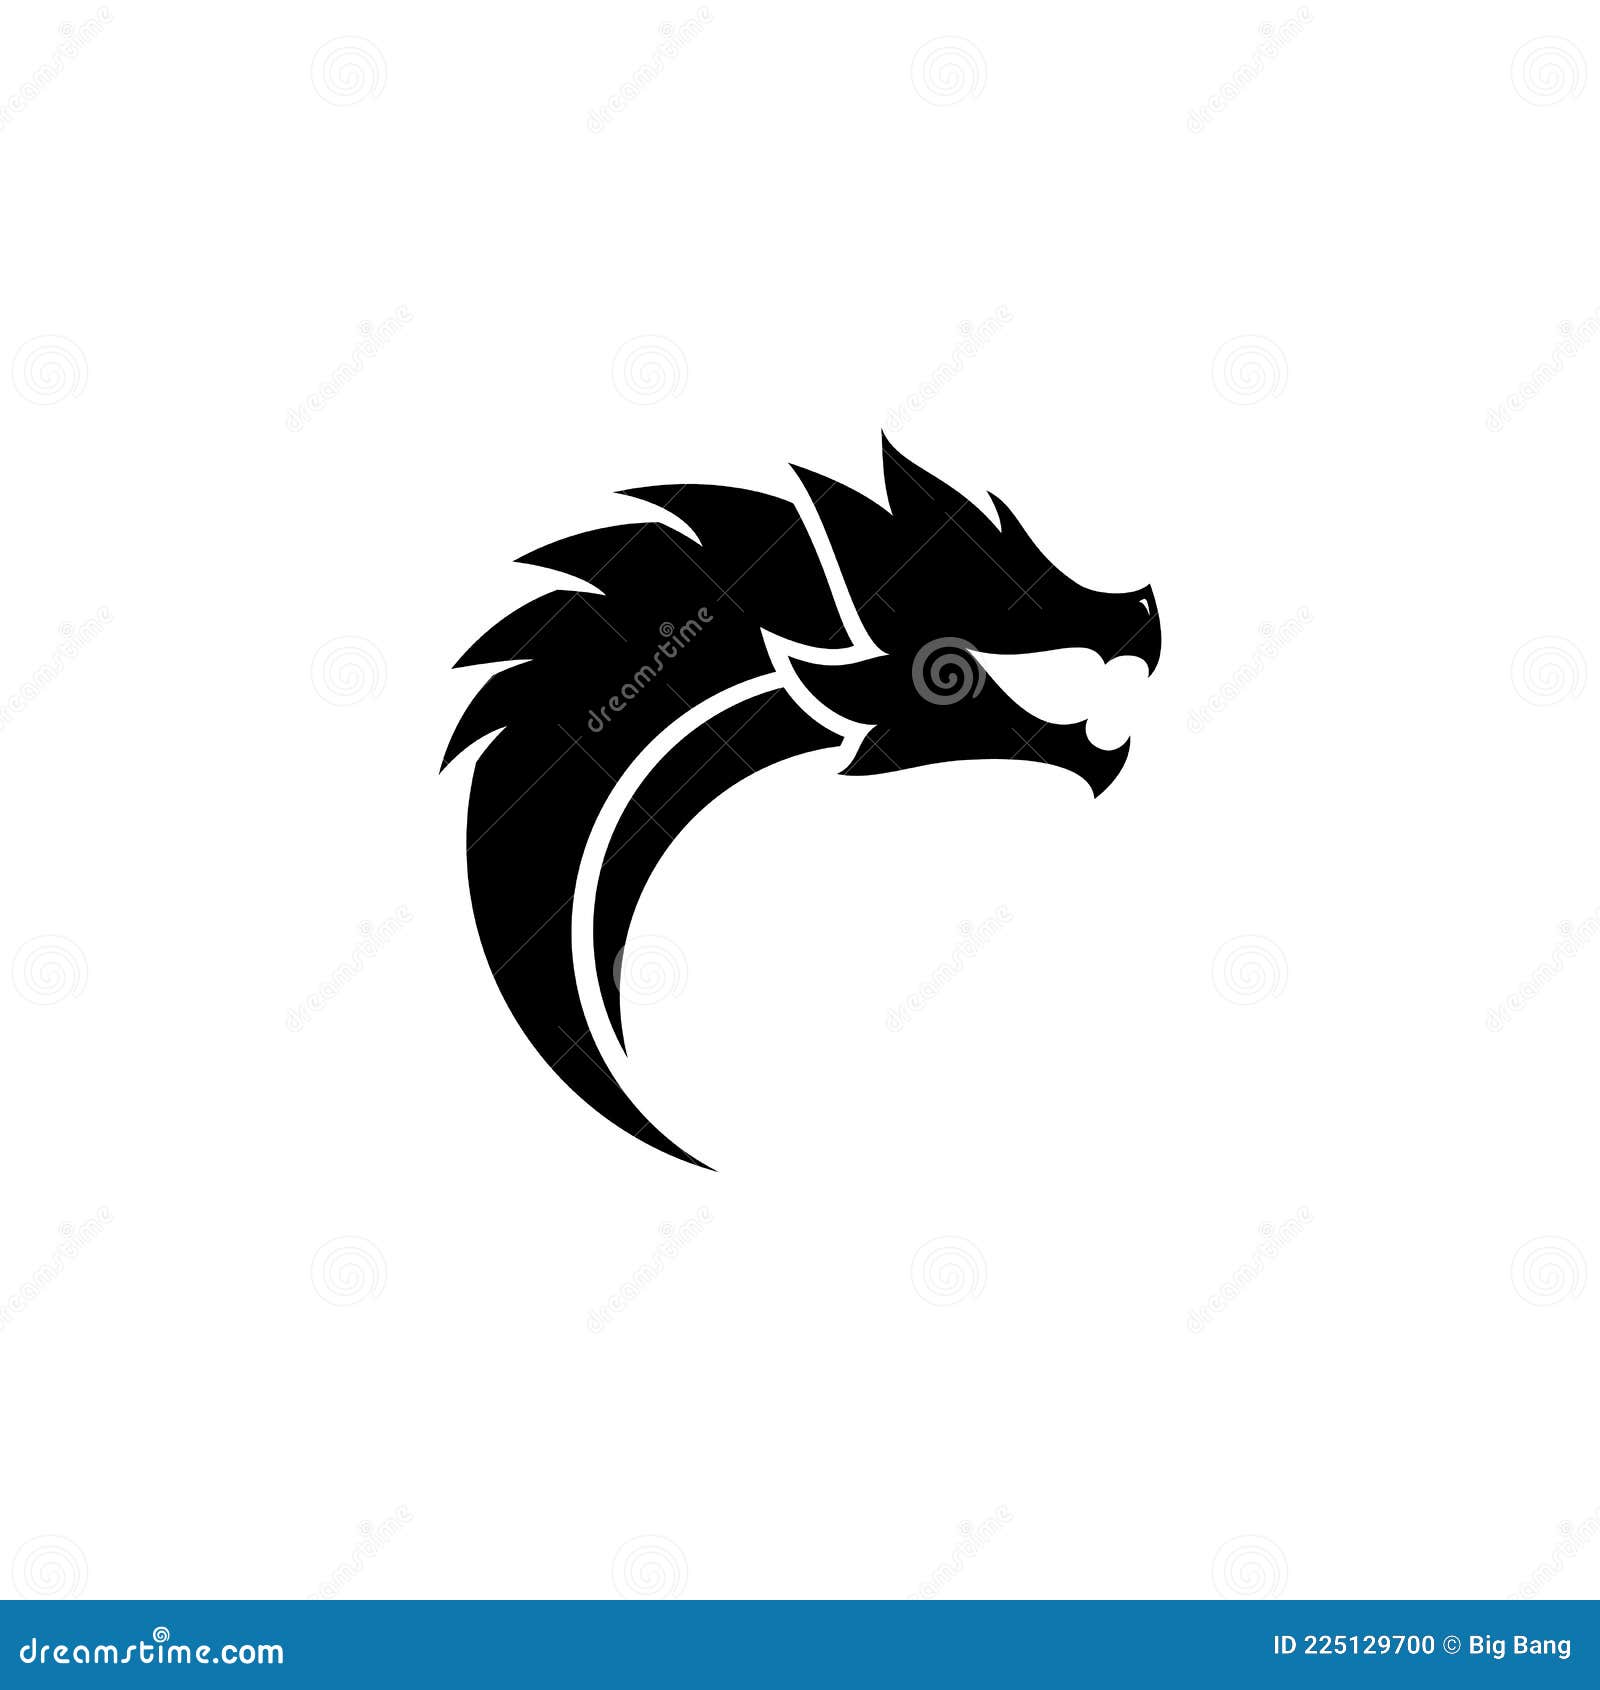 Dragon Head Vector Logo Illustration Stock Vector - Illustration of traditional, asian: 225129700